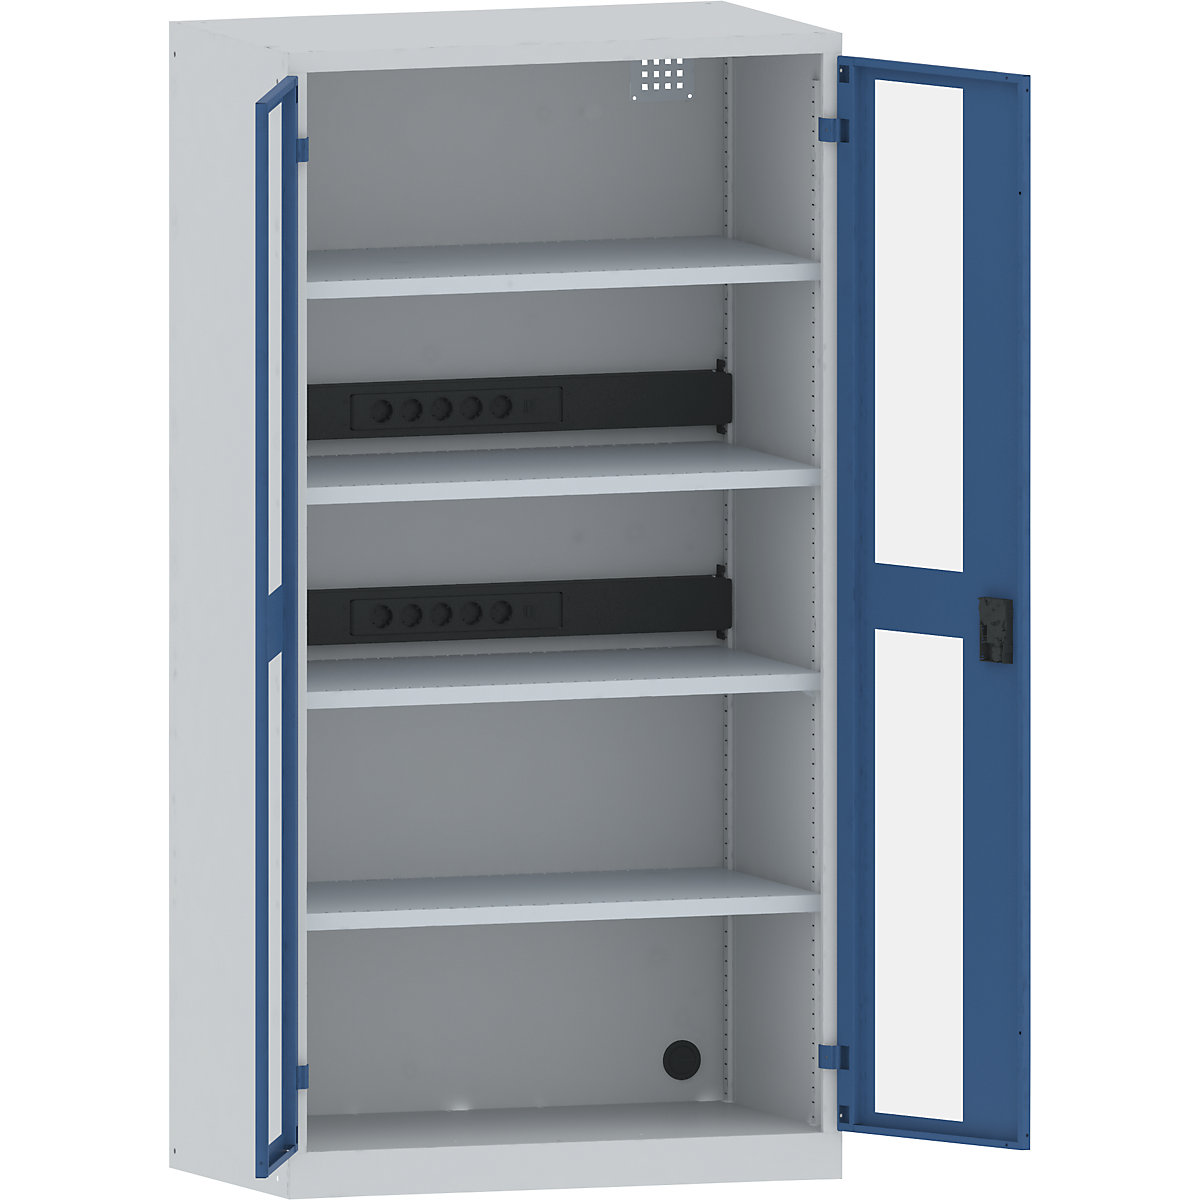 Accuoplaadkast met stroomvoorziening – LISTA, 4 legborden, deuren met zichtvenster, 2 contactdooslijsten op de achterkant, grijs/blauw-26